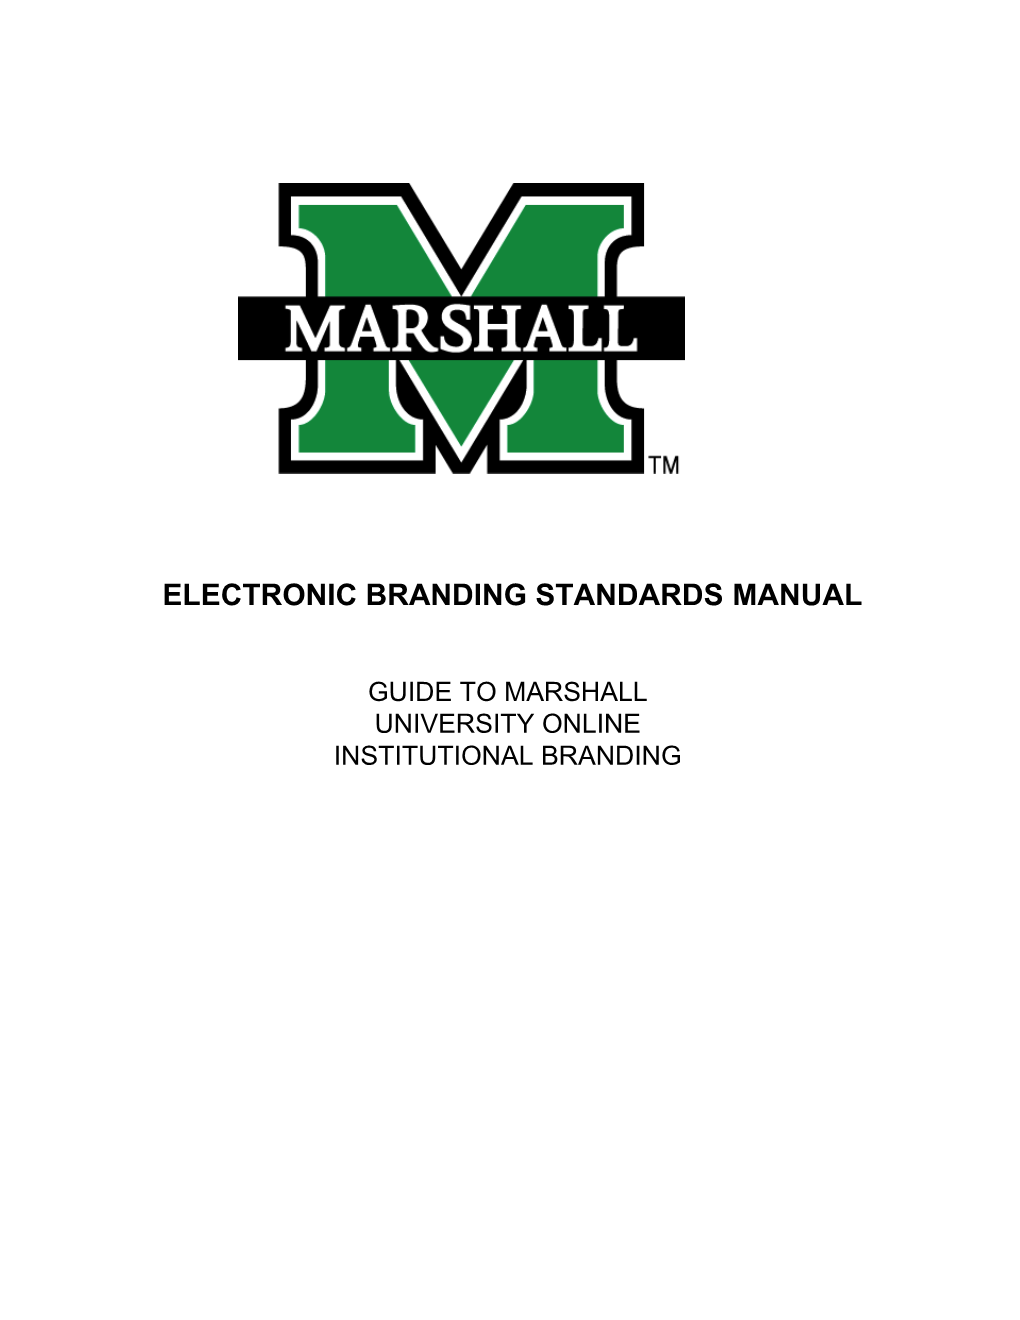 Electronic Branding Standardsmanual